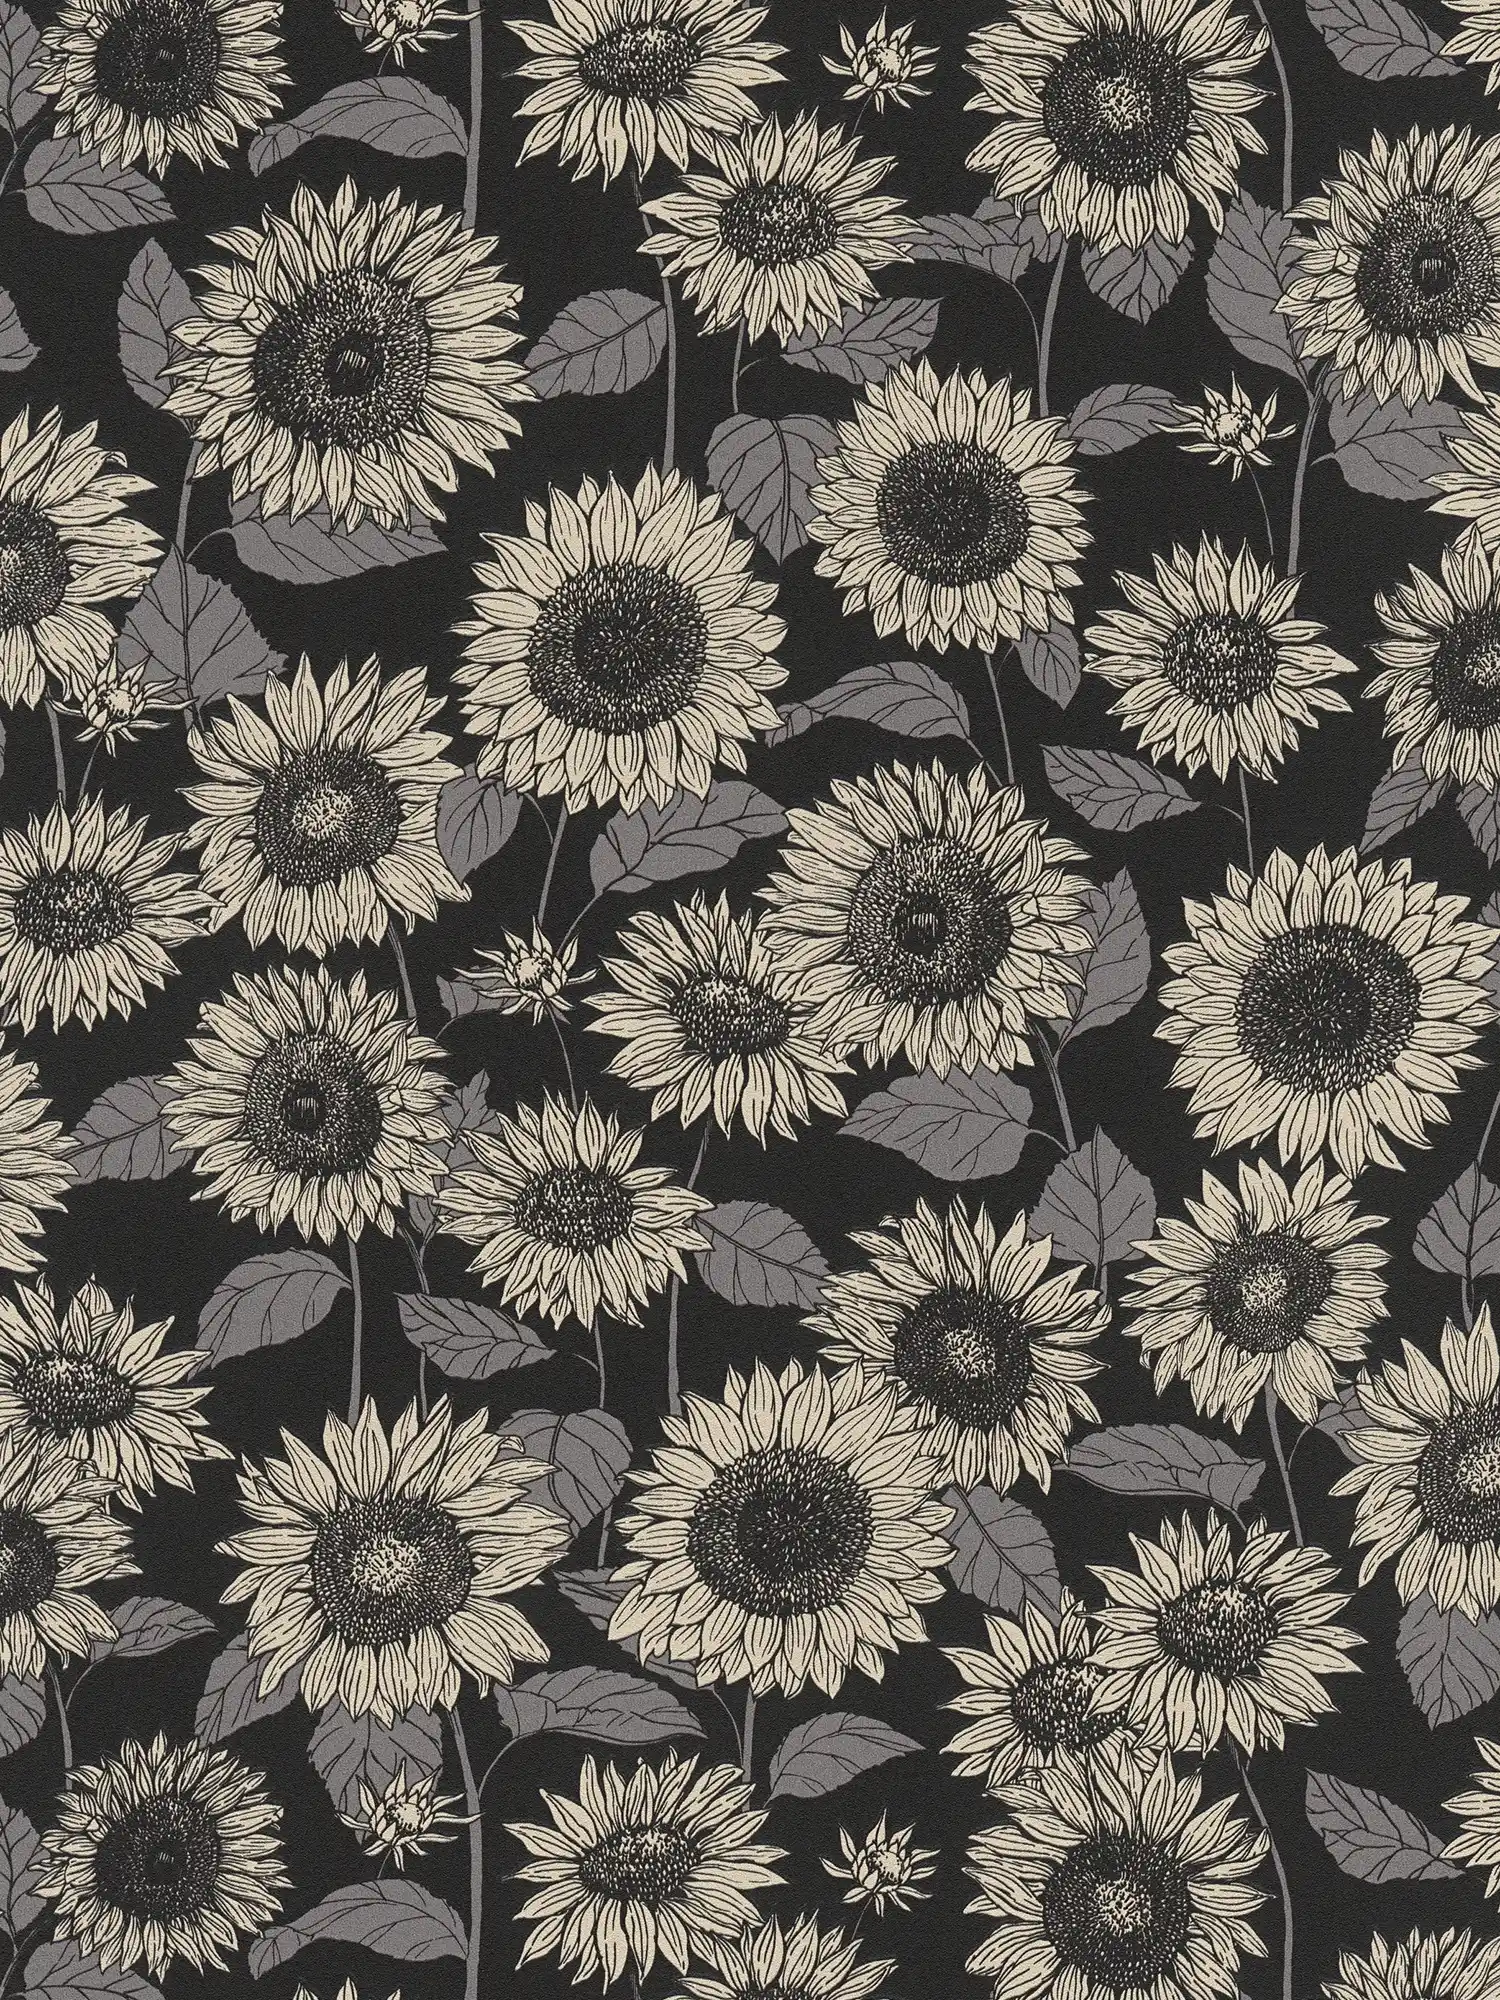 Papier peint Tournesol avec effet métallisé Fleurs - noir, anthracite, gris
